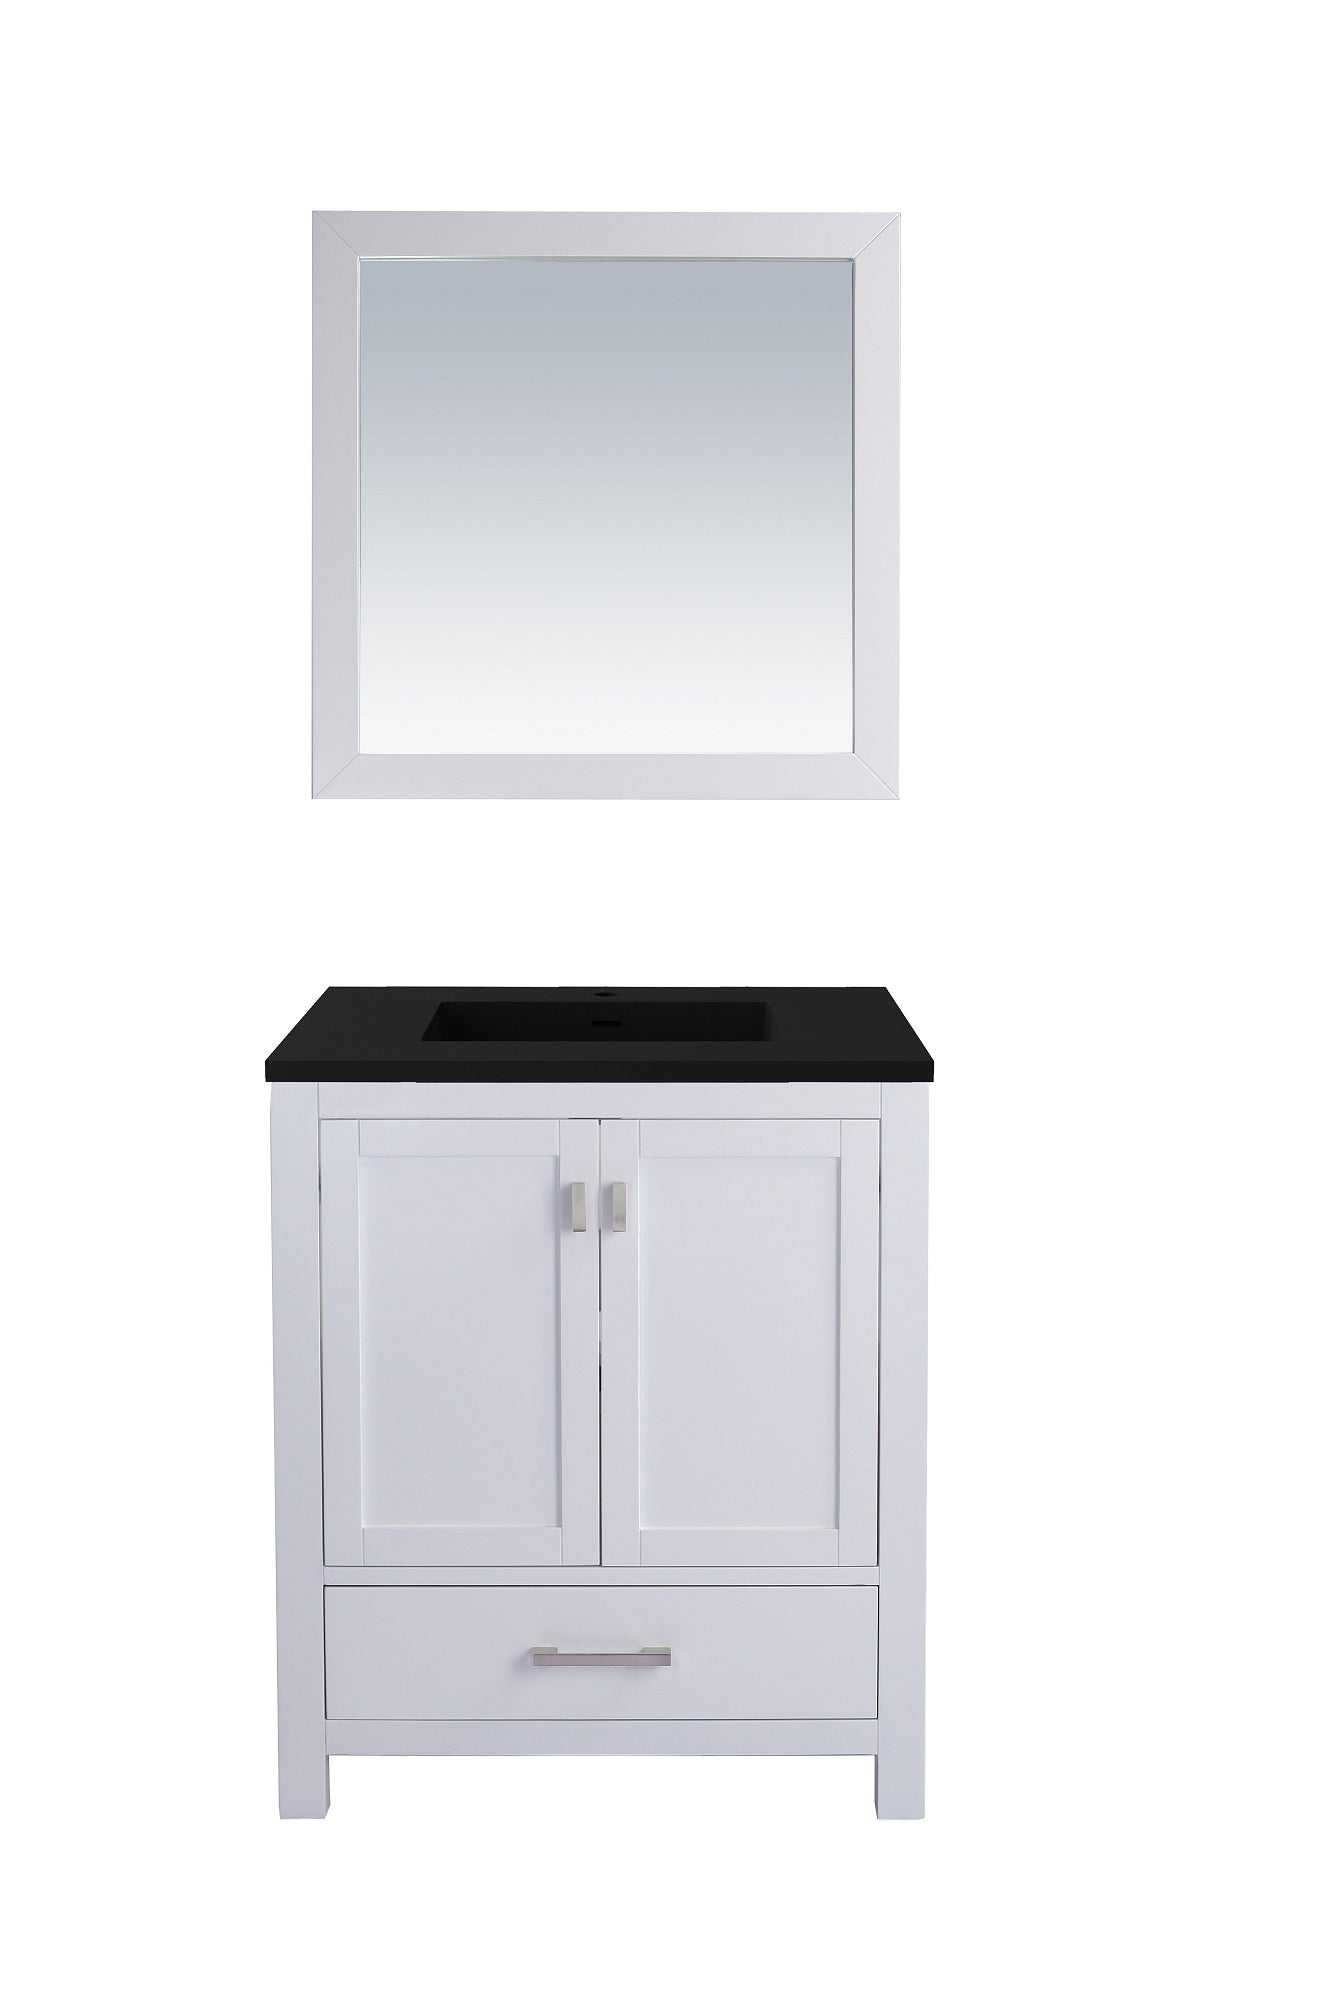 Wilson 30 - Cabinet with VIVA Stone Solid Surface Countertop - Luxe Bathroom Vanities Luxury Bathroom Fixtures Bathroom Furniture